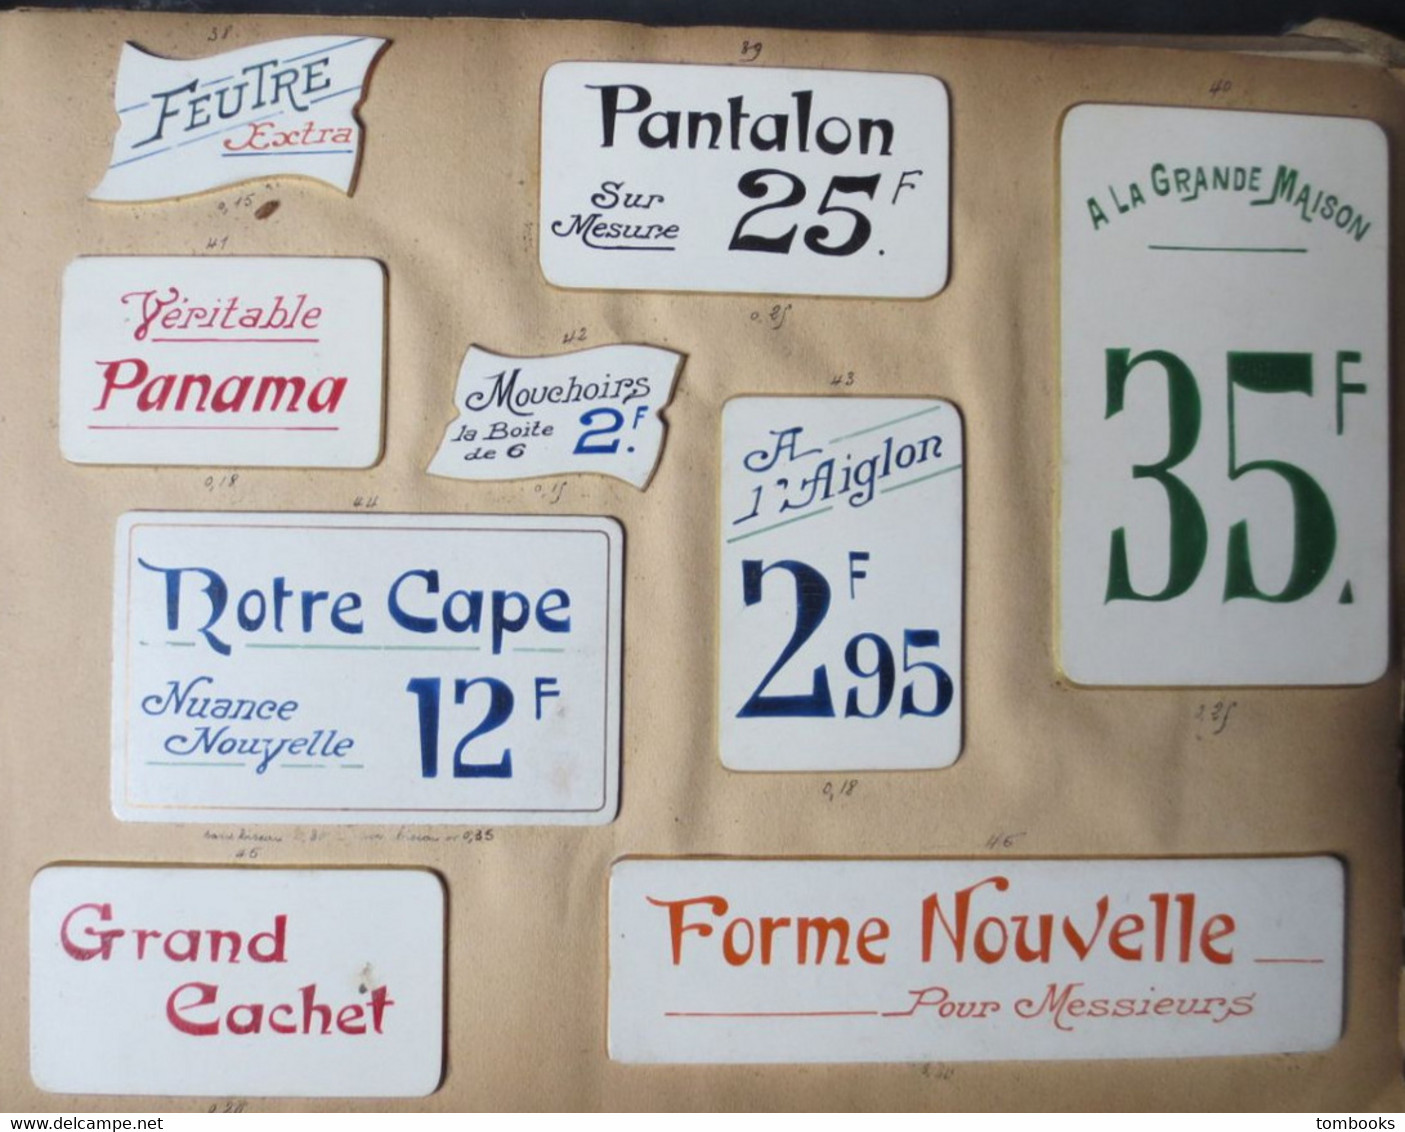 Le Havre - Catalogue - Spécimens d'étiquettes pour étalages - ( peintes à la main ) début XX e - très rare -